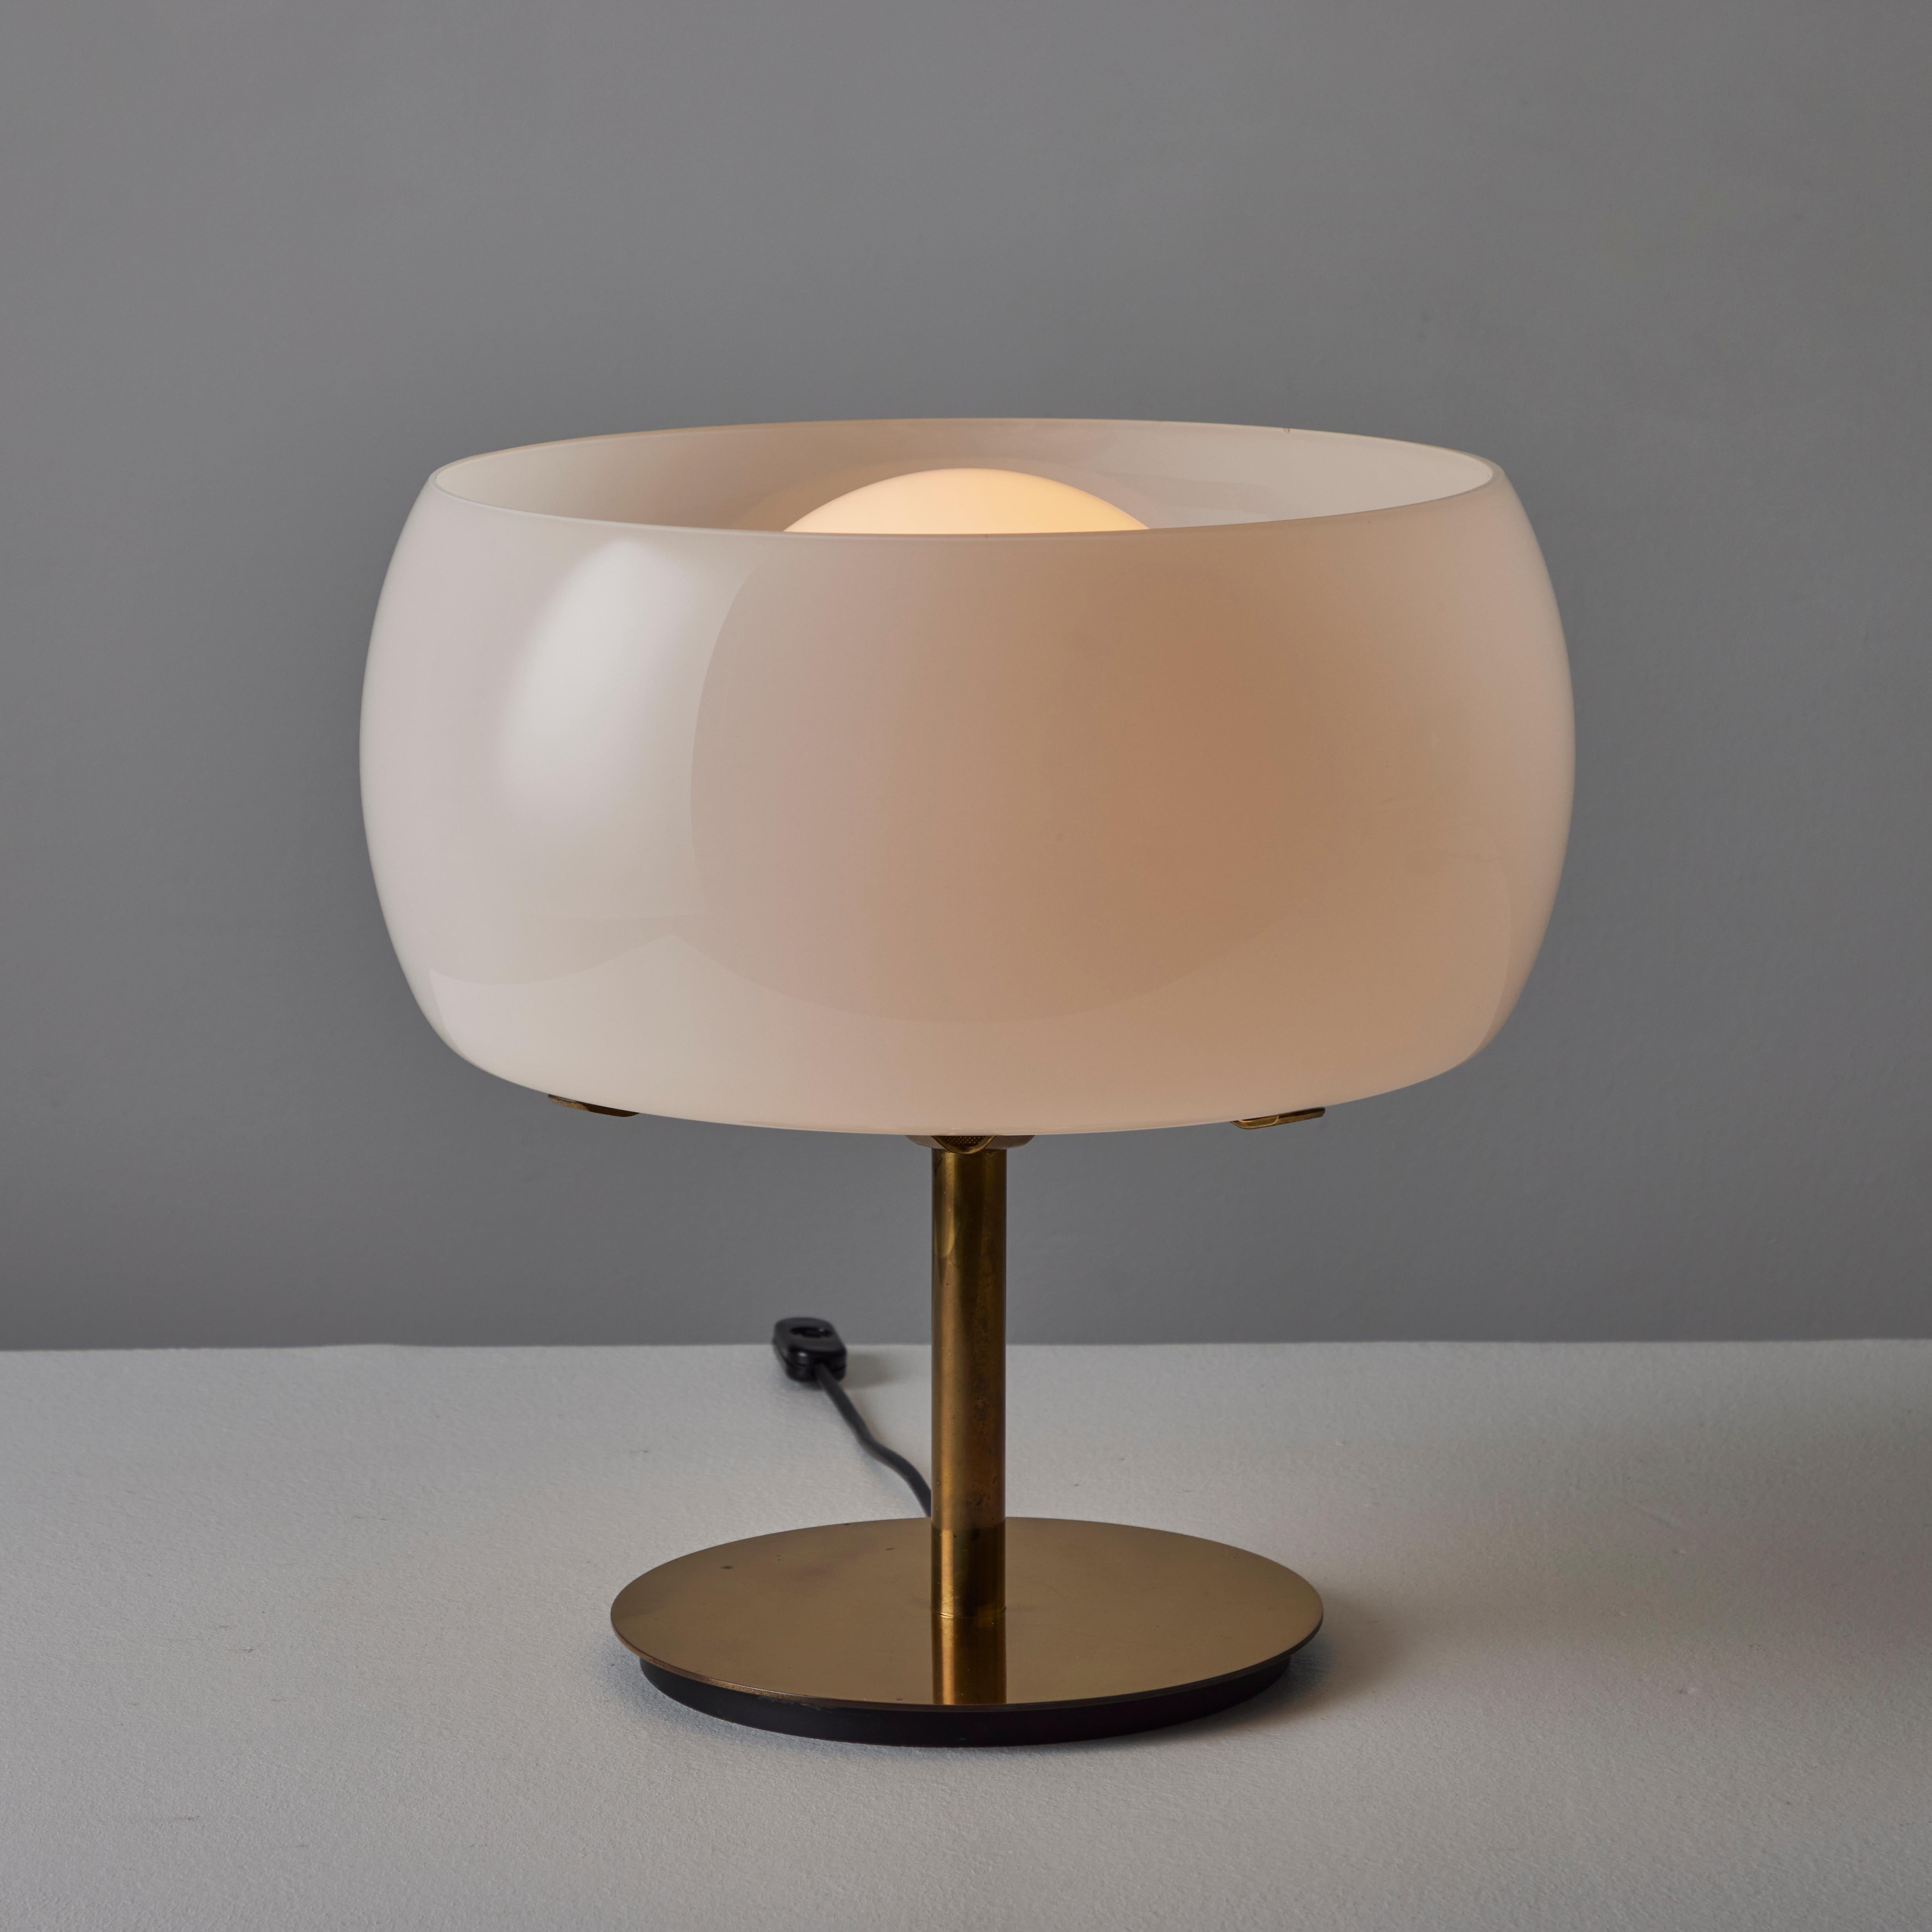 Paire de lampes de table 'Erse' de Vico Magistretti pour Artemide. Créé et fabriqué en Italie, 1964. La base et la tige de la lampe sont en laiton poli. L'abat-jour orbital externe est en verre opalin blanc qui entoure un globe blanc givré qui